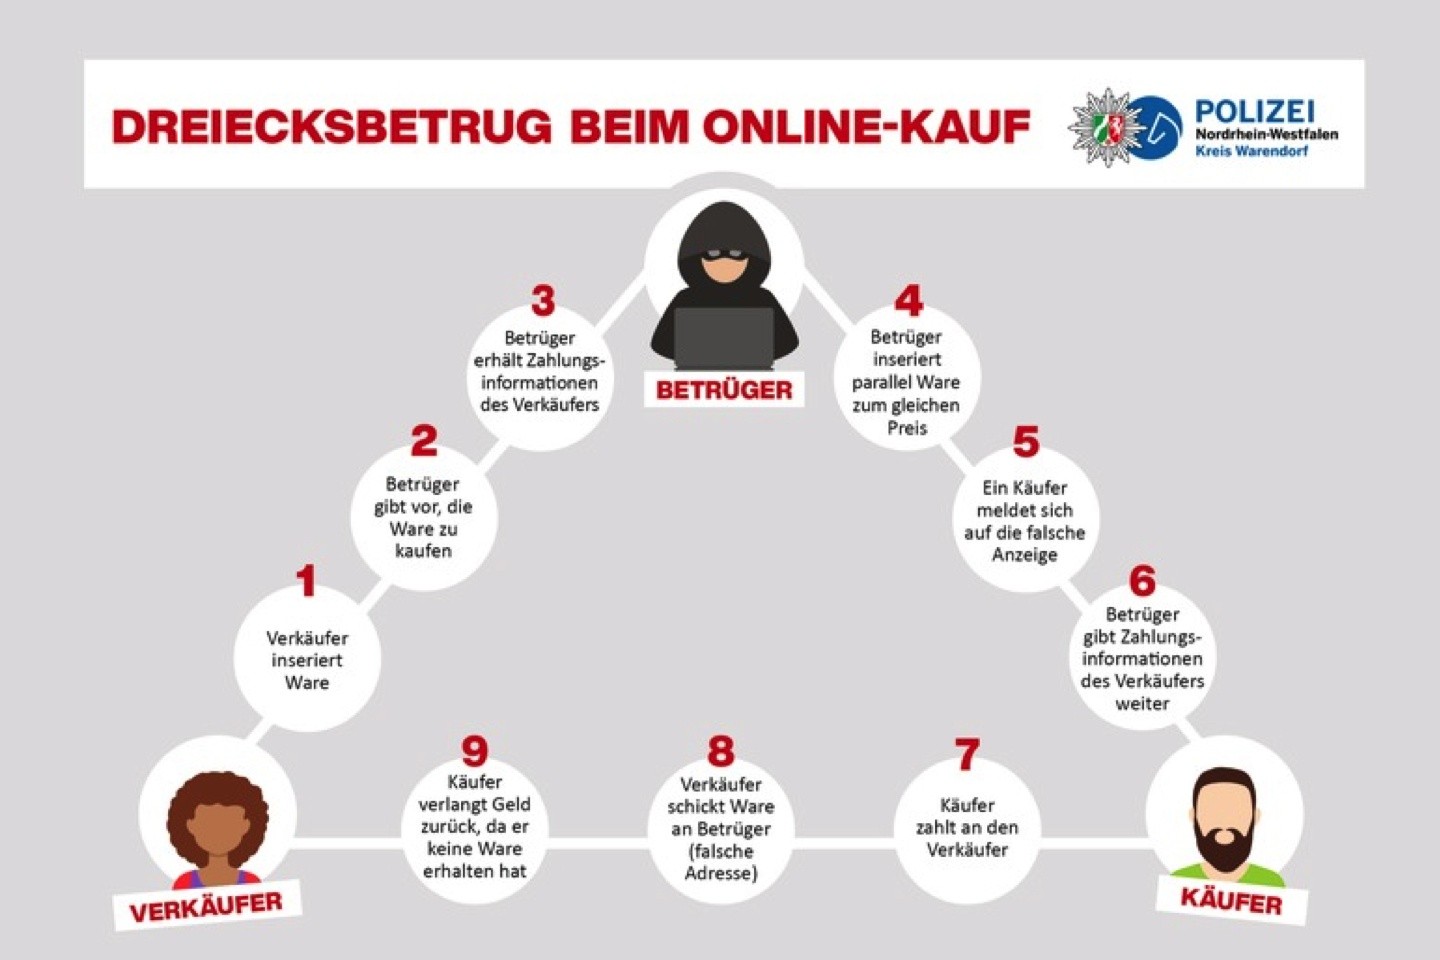 Polizei,Trickbetrug,Online,Flohmarkt,Kreis Warendorf,